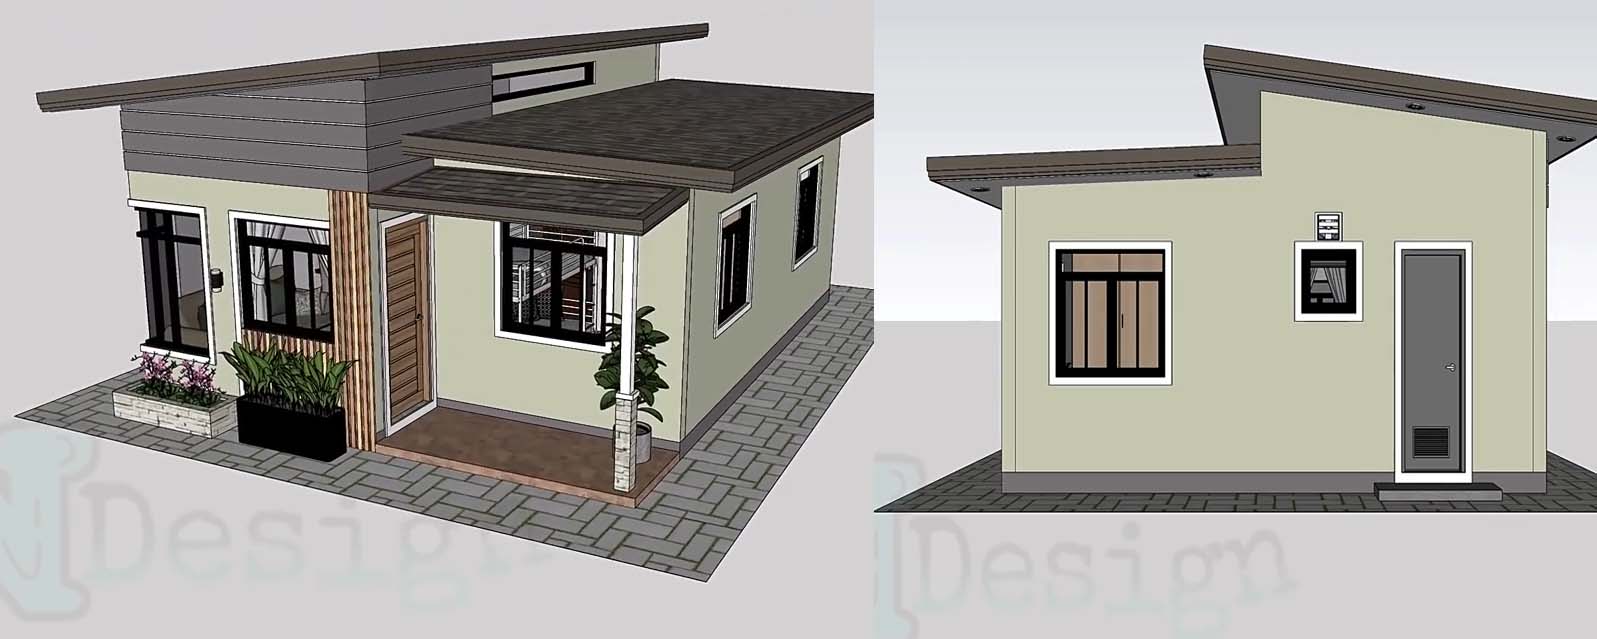 Desain dan  Denah Rumah  Minimalis  Kontemporer Ukuran 6 x 8 M dengan Eksterior Keren Homeshabby 